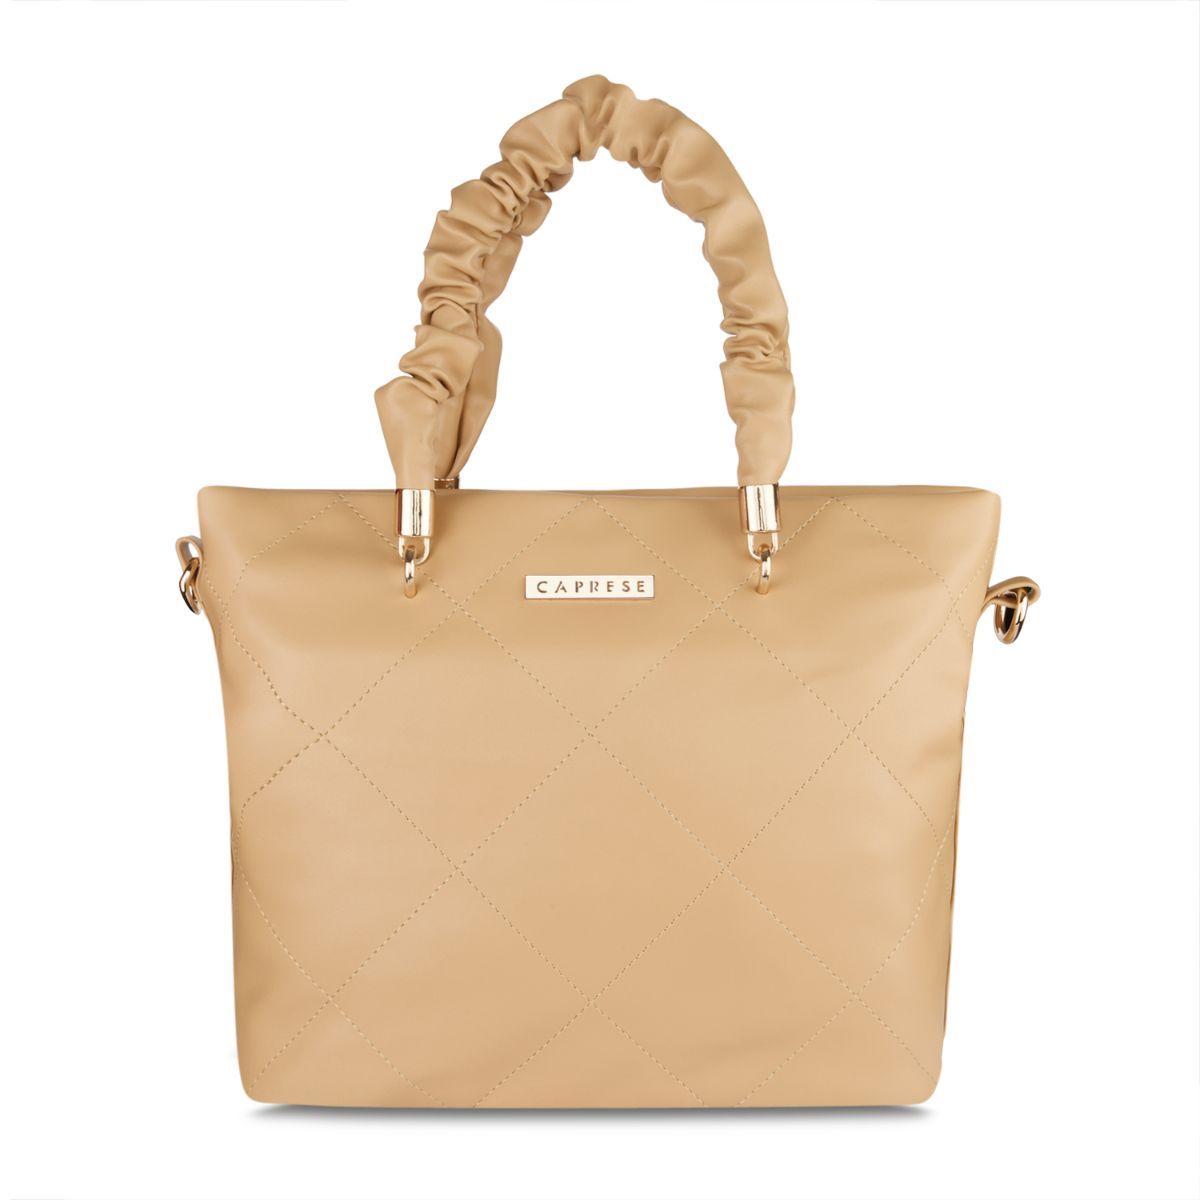 Buy Caprese womens VINCI T Medium BLUE Tote Bag at Amazon.in